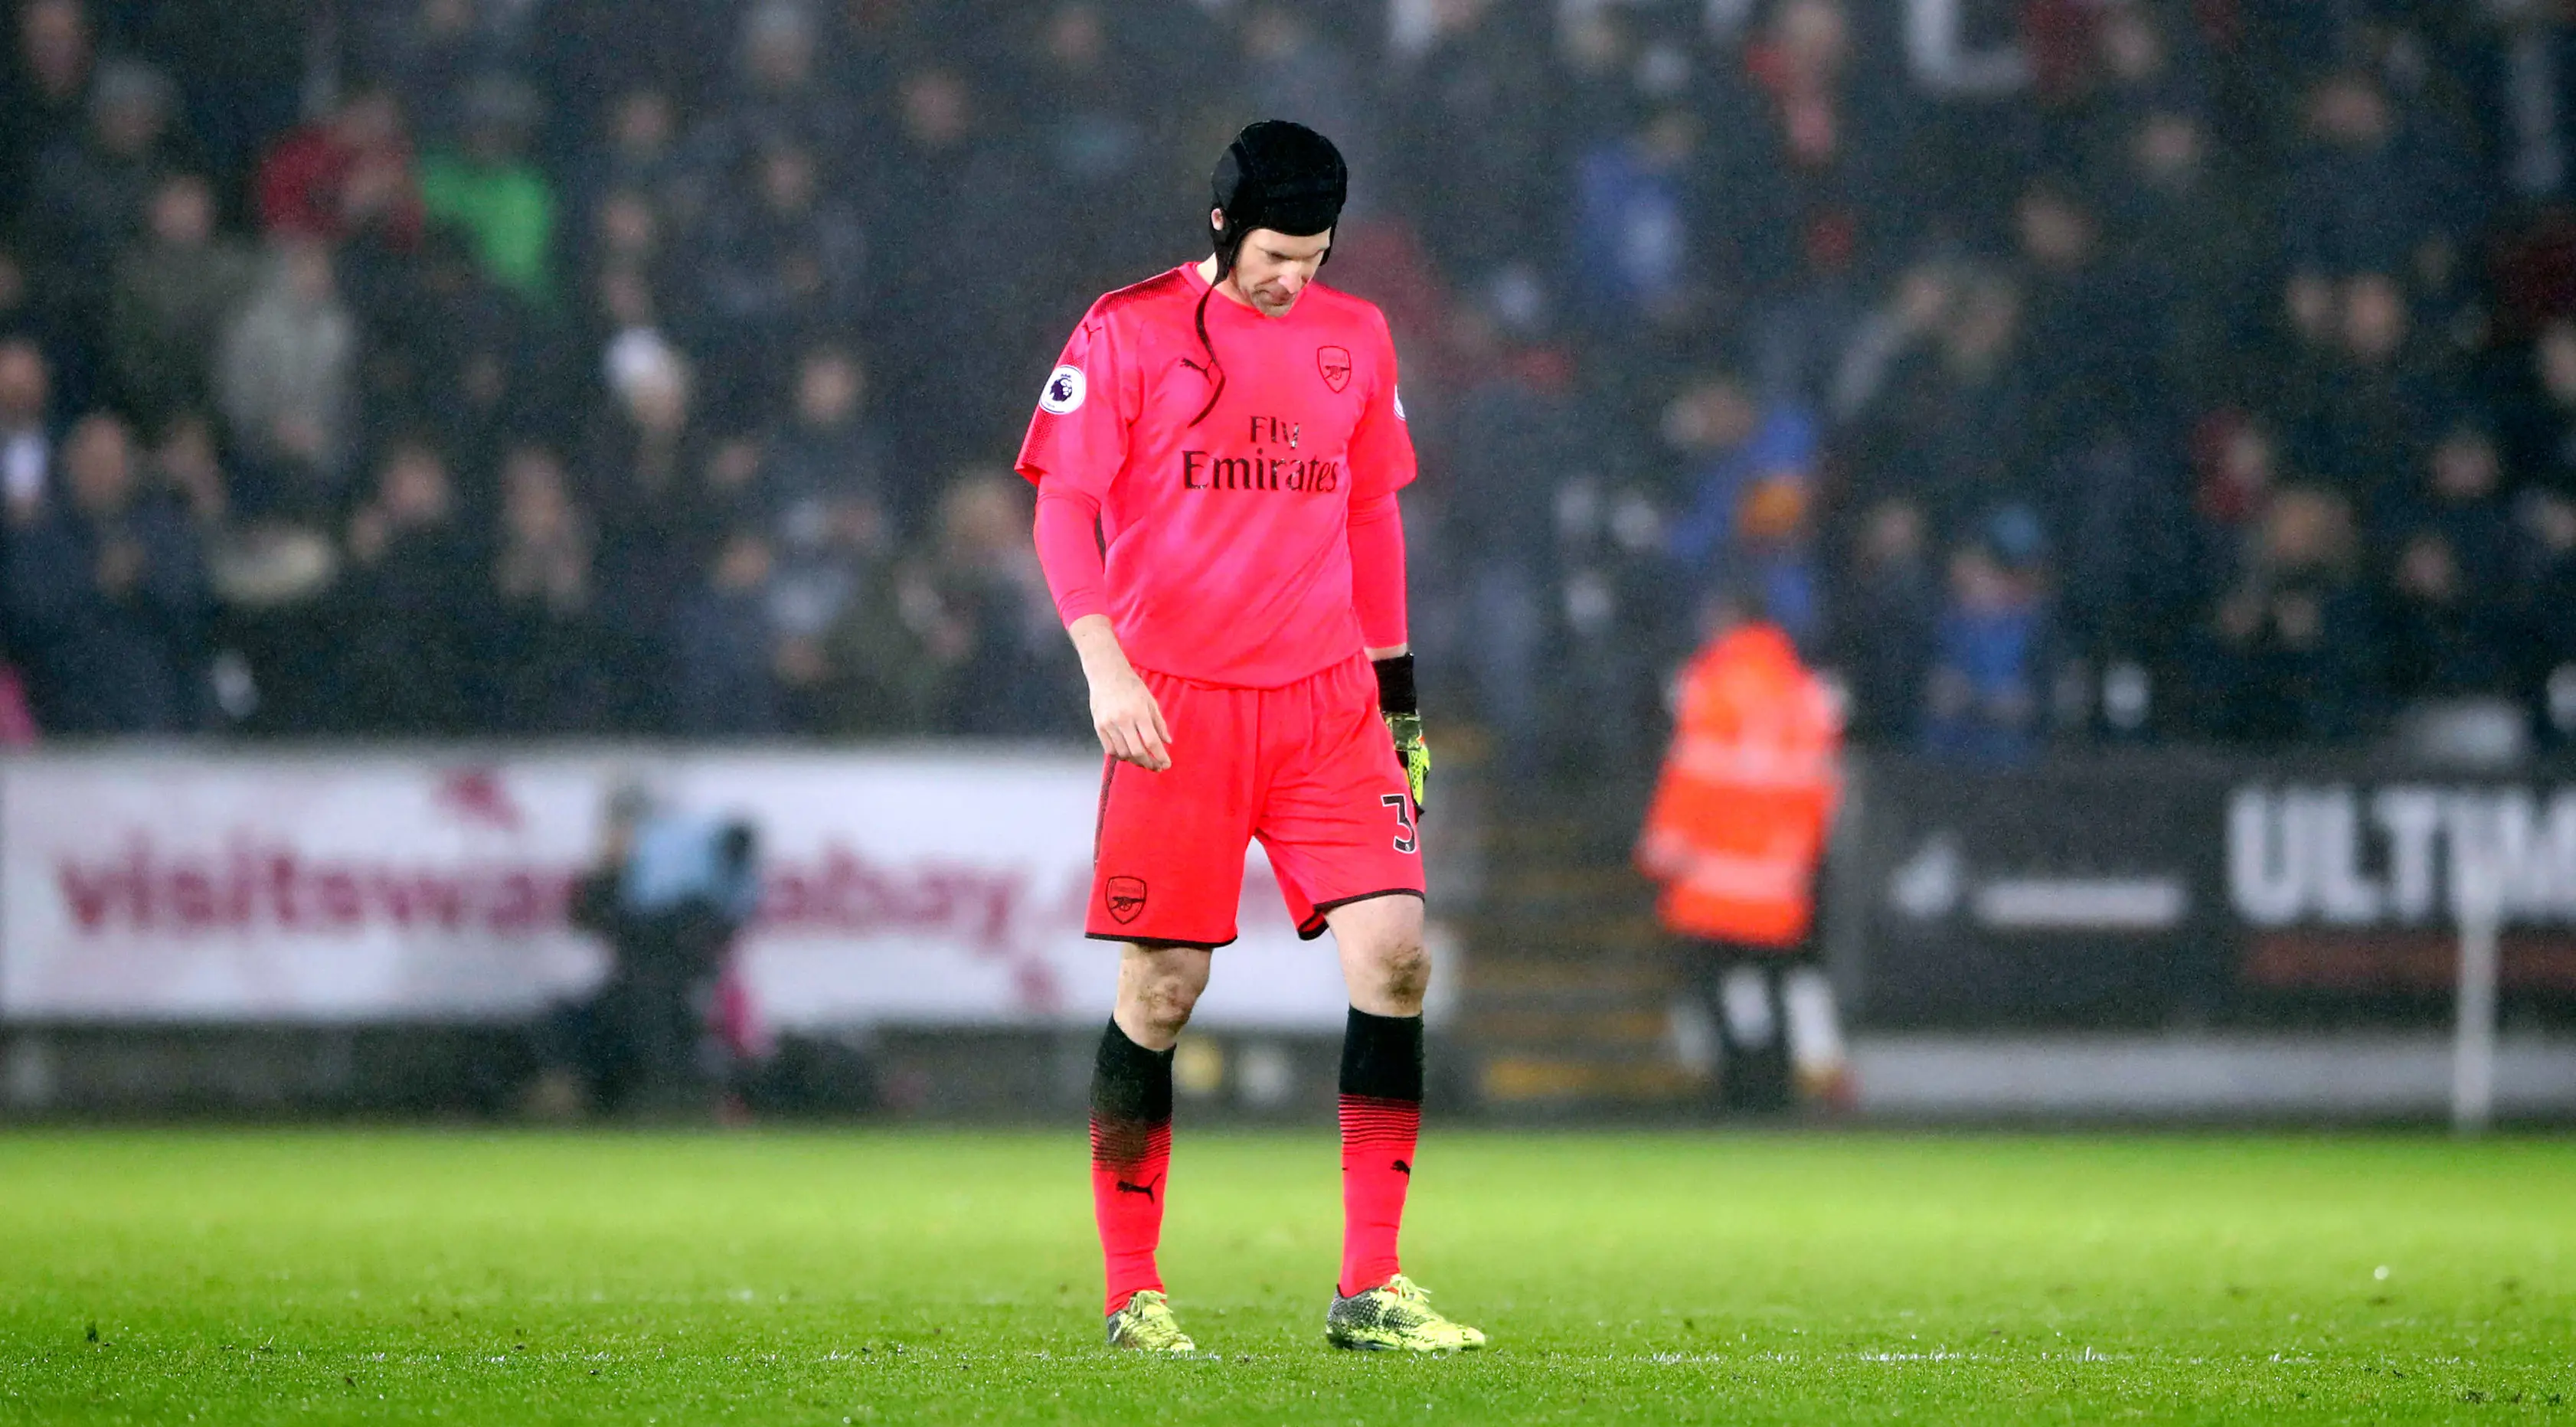 Kiper Arsenal, Petr Cech (Nick Potts/PA via AP)